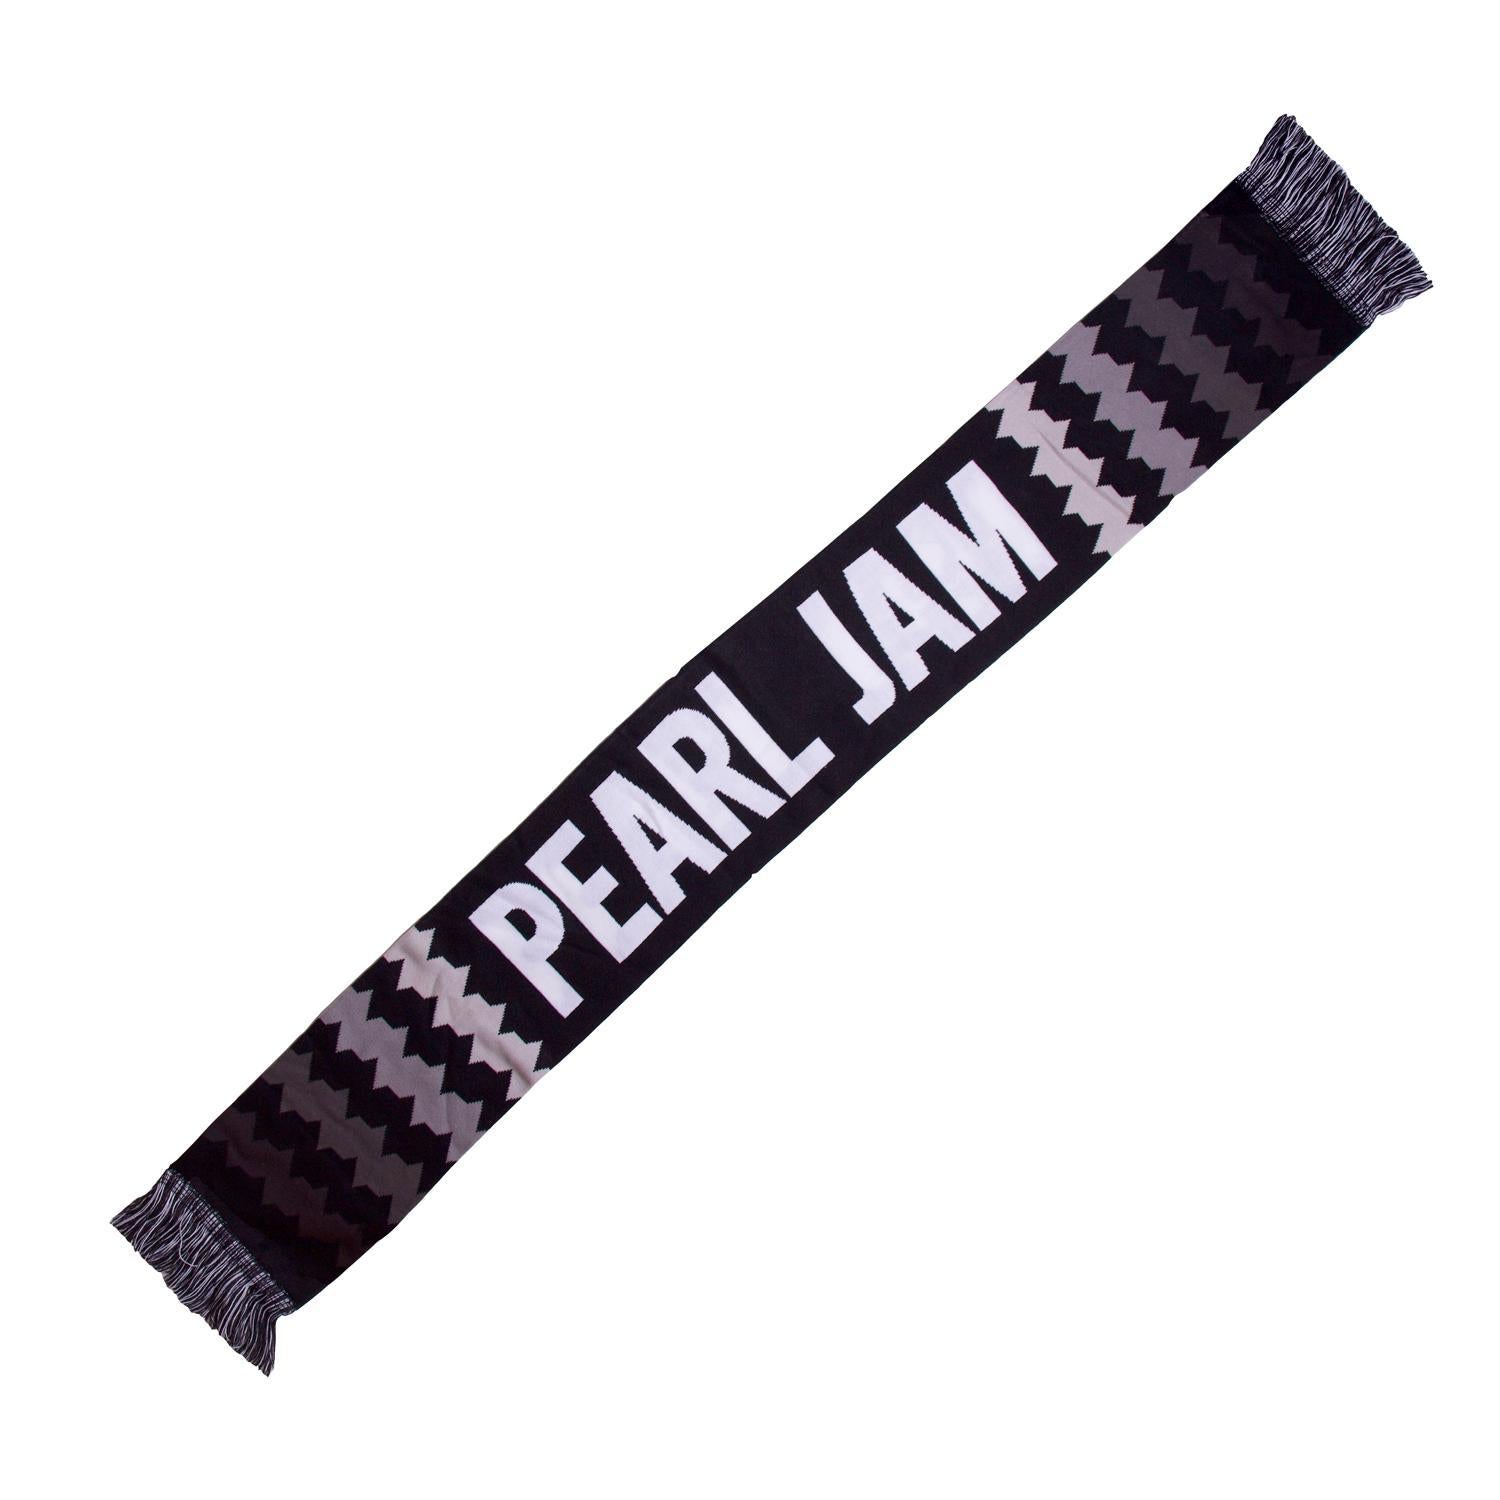 pearl jam official tour merchandise